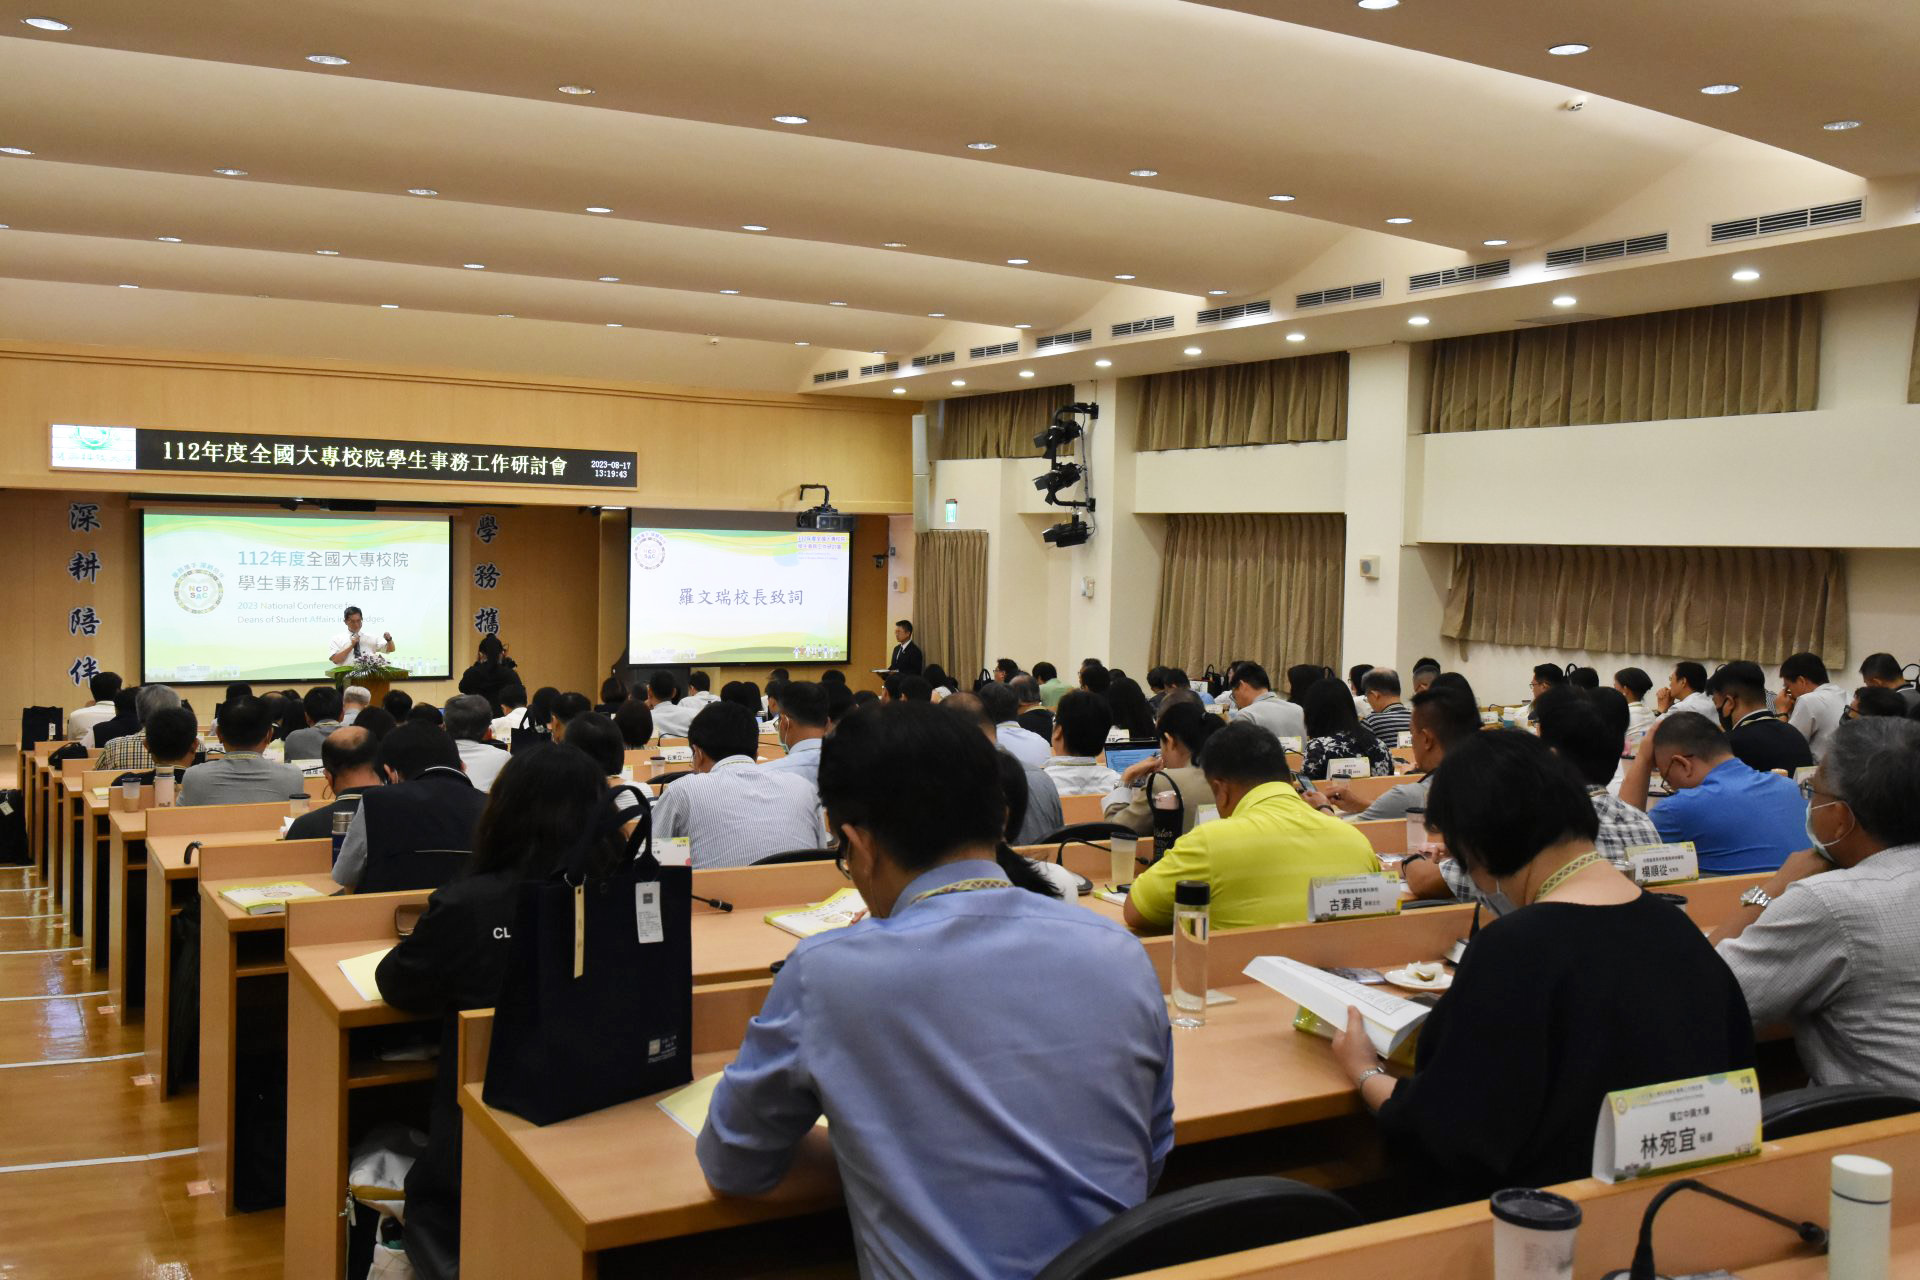 教育部舉辦「112年度全國大專校院學生事務工作研討會」。